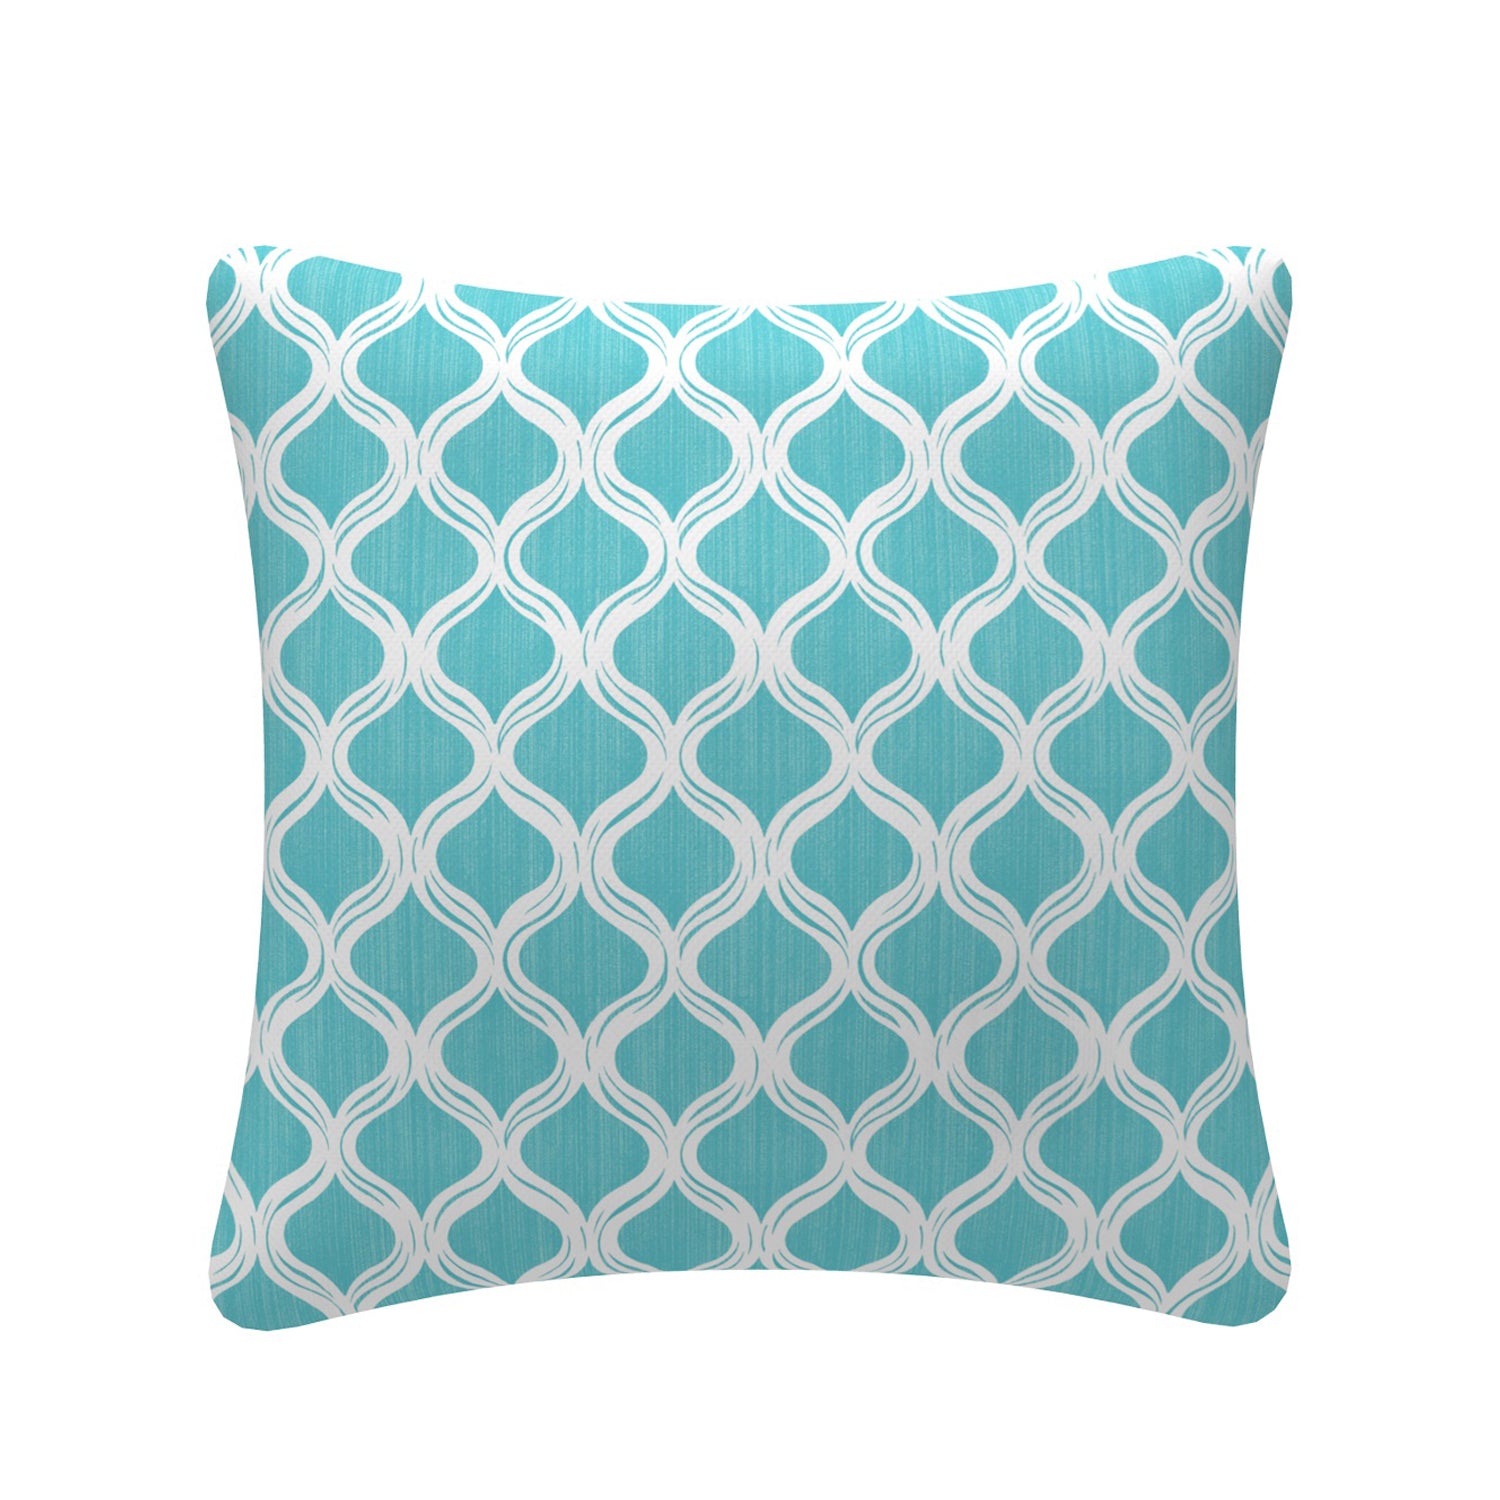 Decorative Pillows | Throw Pillow | Black & White Geometric | 20x20